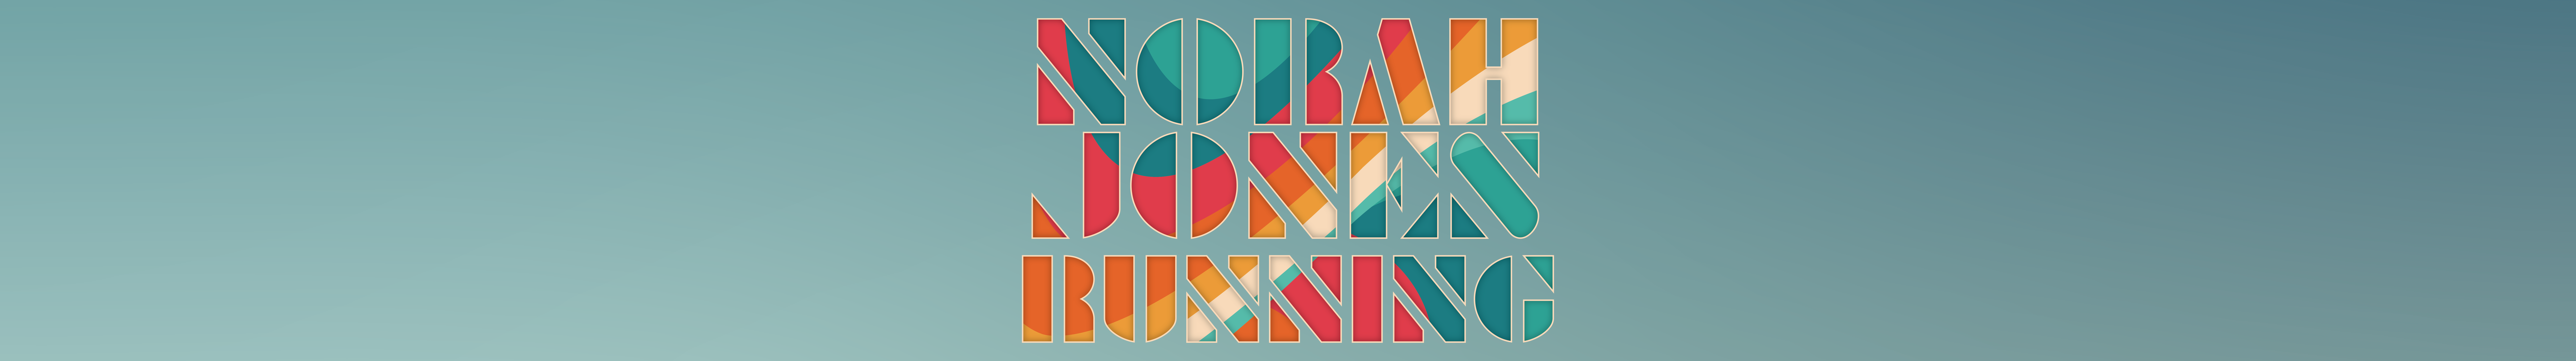 Norah Jones, Running, Pick of the Week, Visions, WERS 88.9 FM